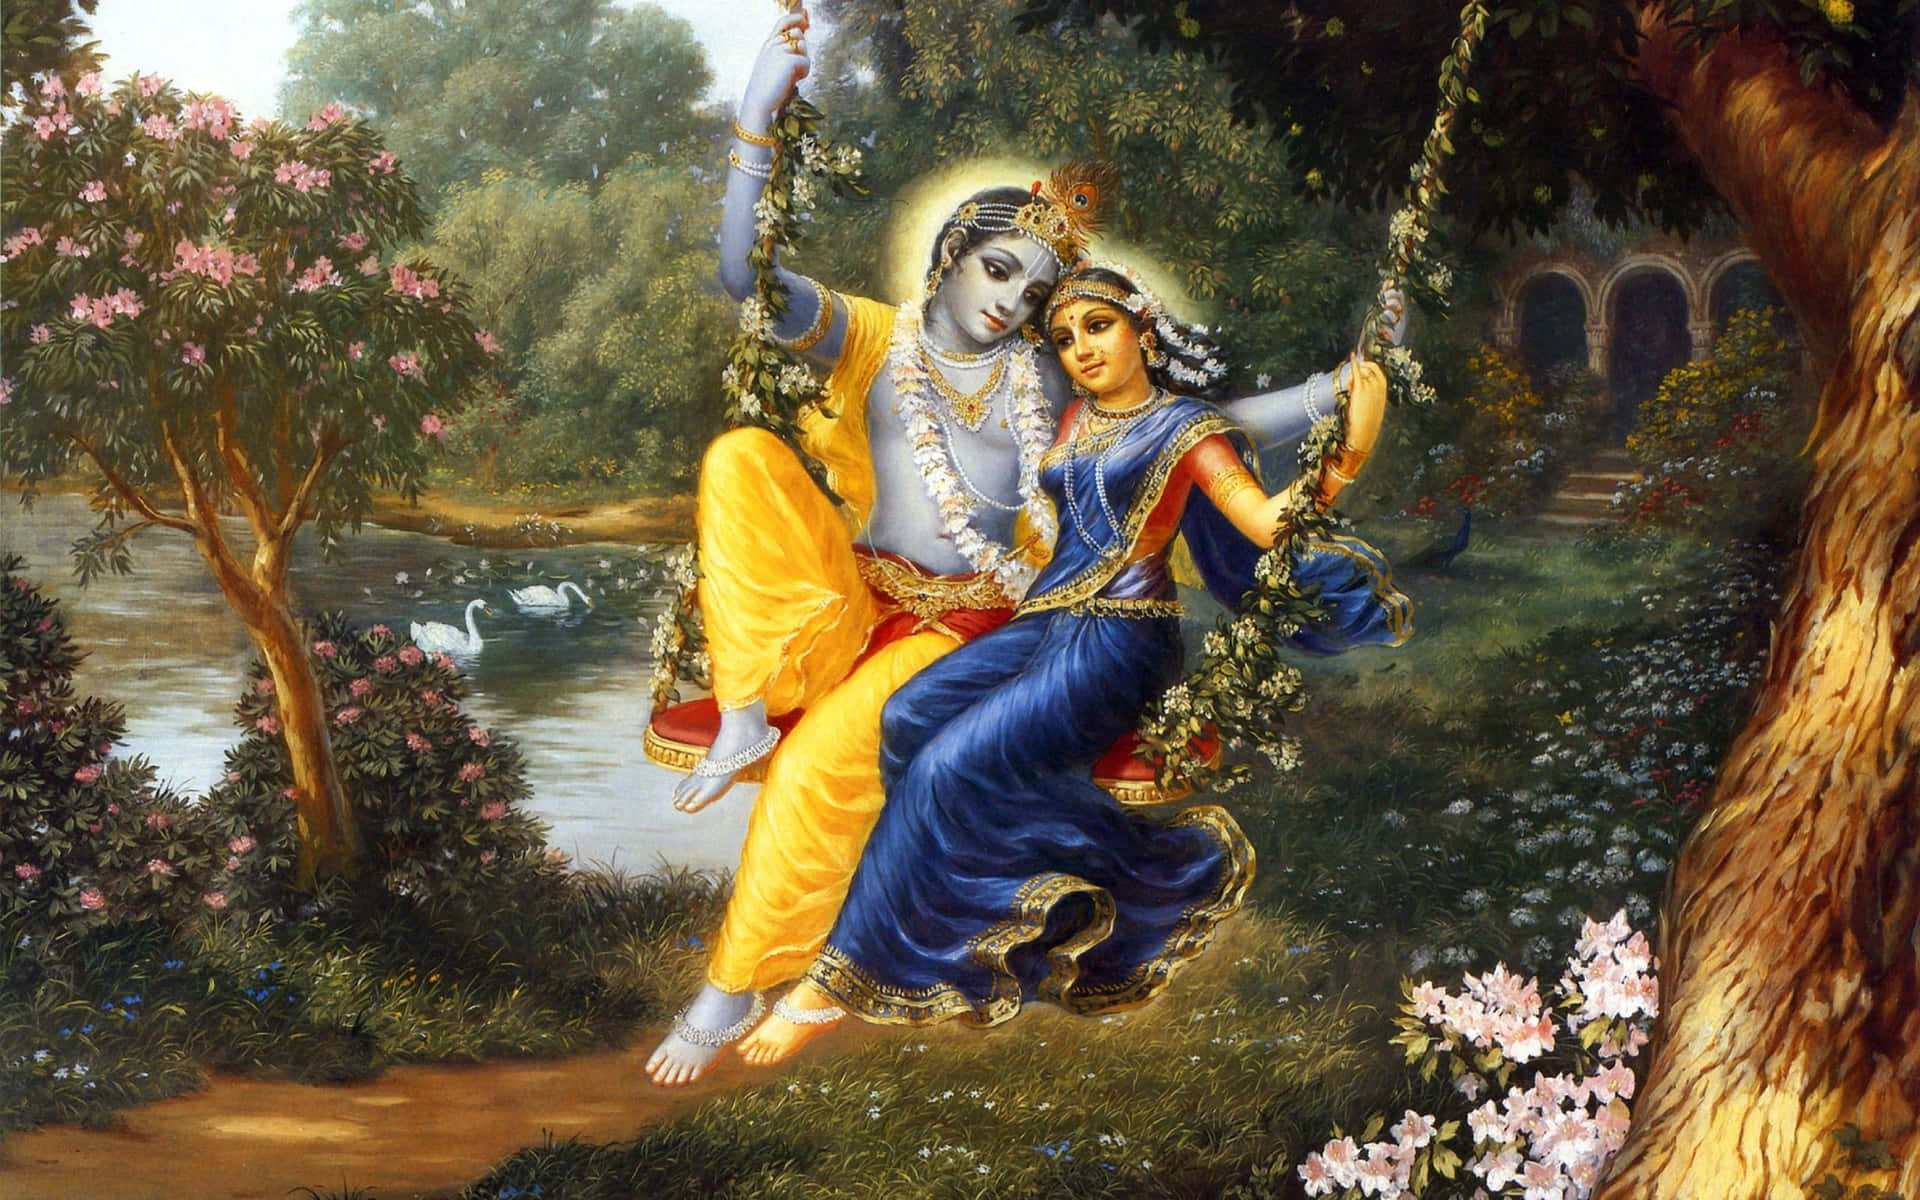 Imagende Radha Krishna Balanceándose Bajo Un Árbol.